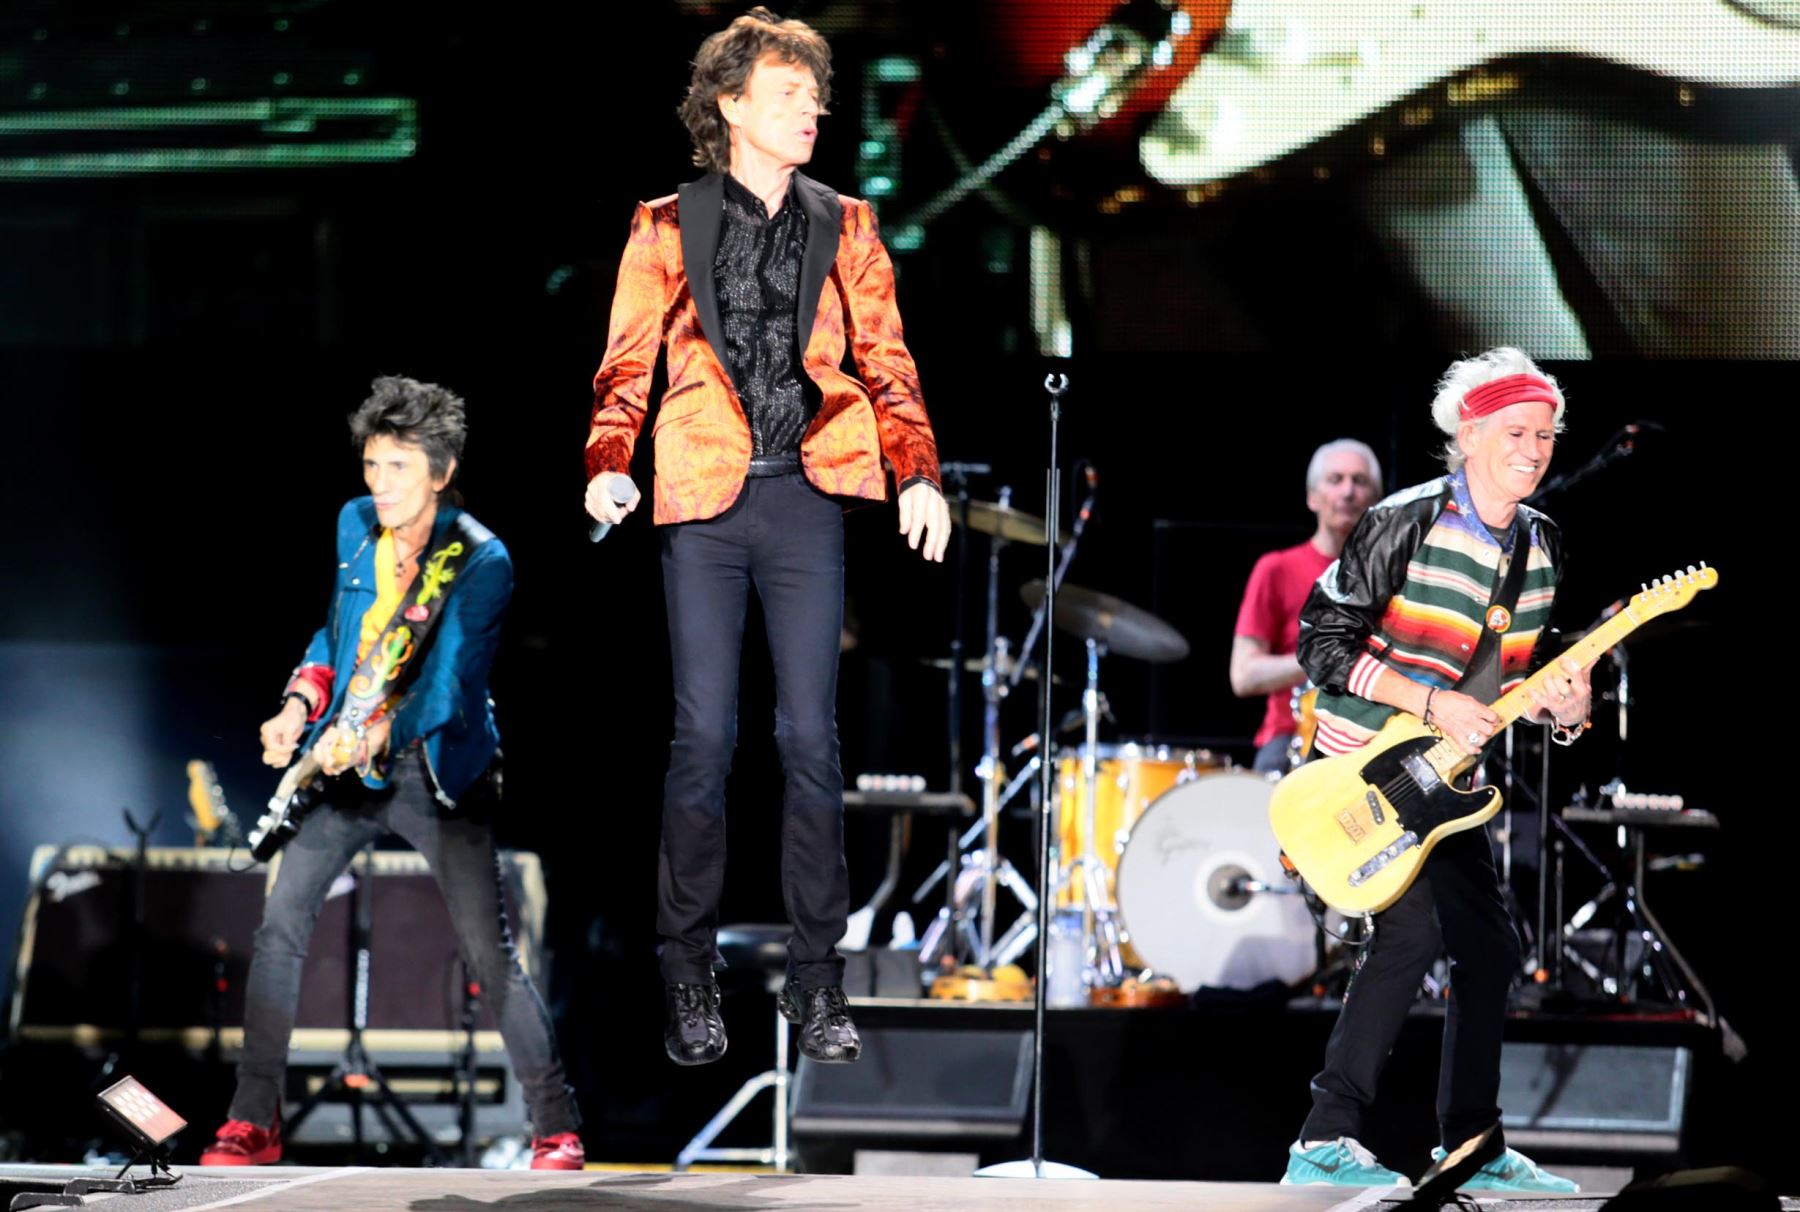 LIMA,PERÚ-MARZO 06. La legendaria banda Rolling Stones ofrece  su concierto en el Estadio Monumental de Lima, presentación esperada por sus fanáticos peruanos durante varias décadas. Foto: ANDINA/Carlos Lezama